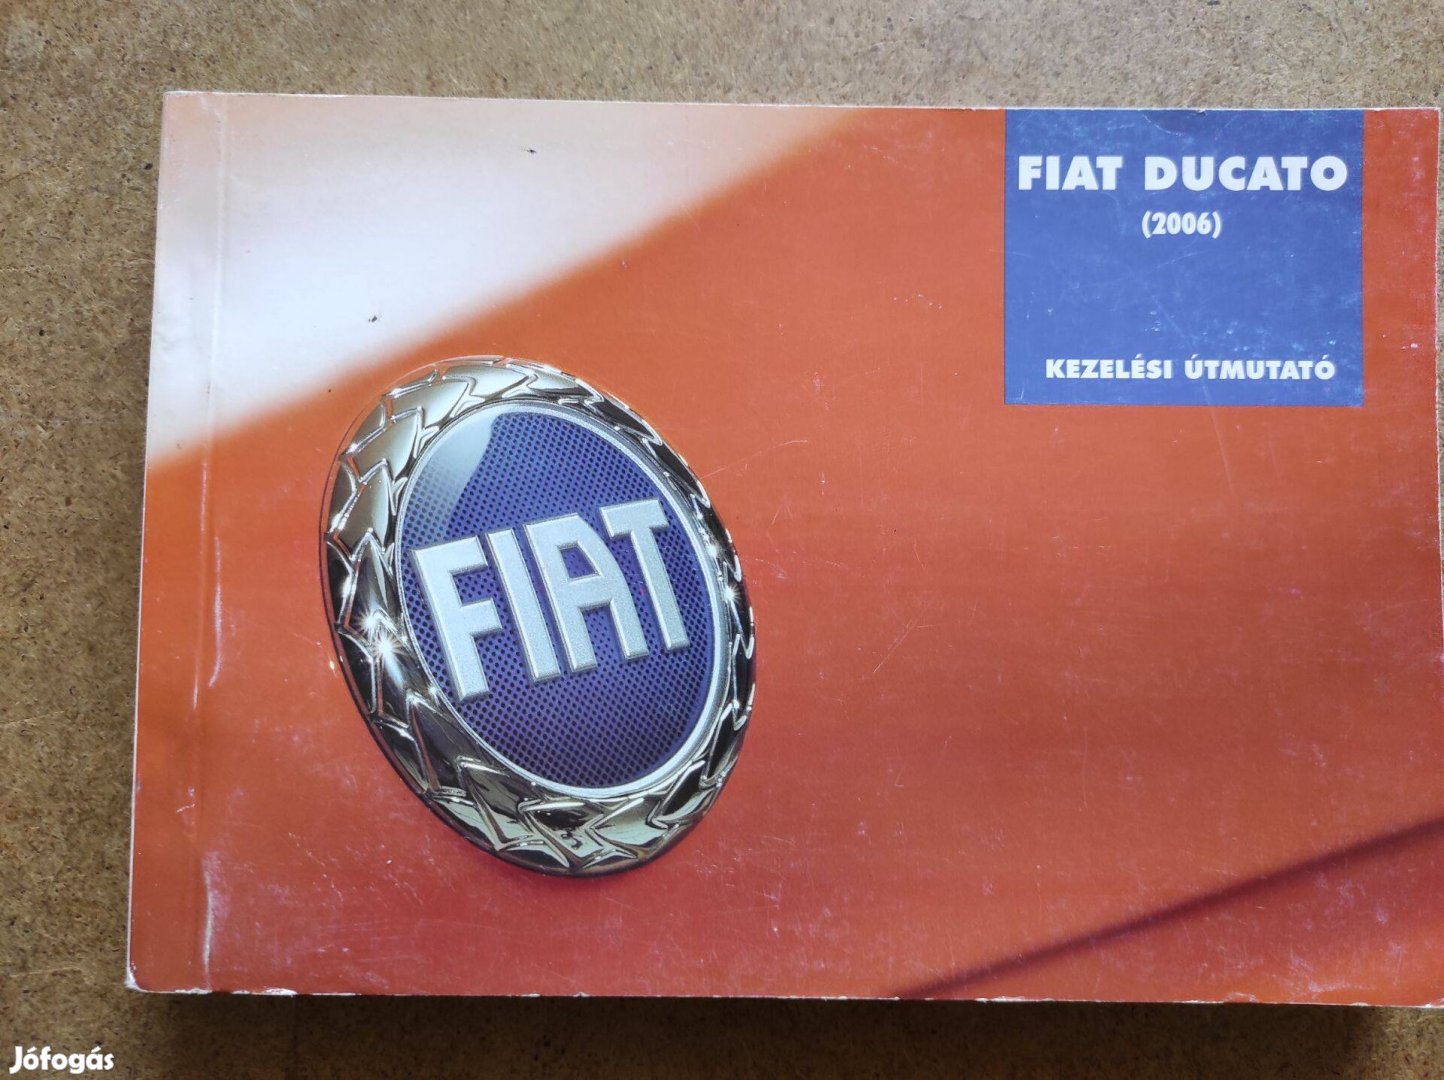 Fiat Ducato kezelési útmutató